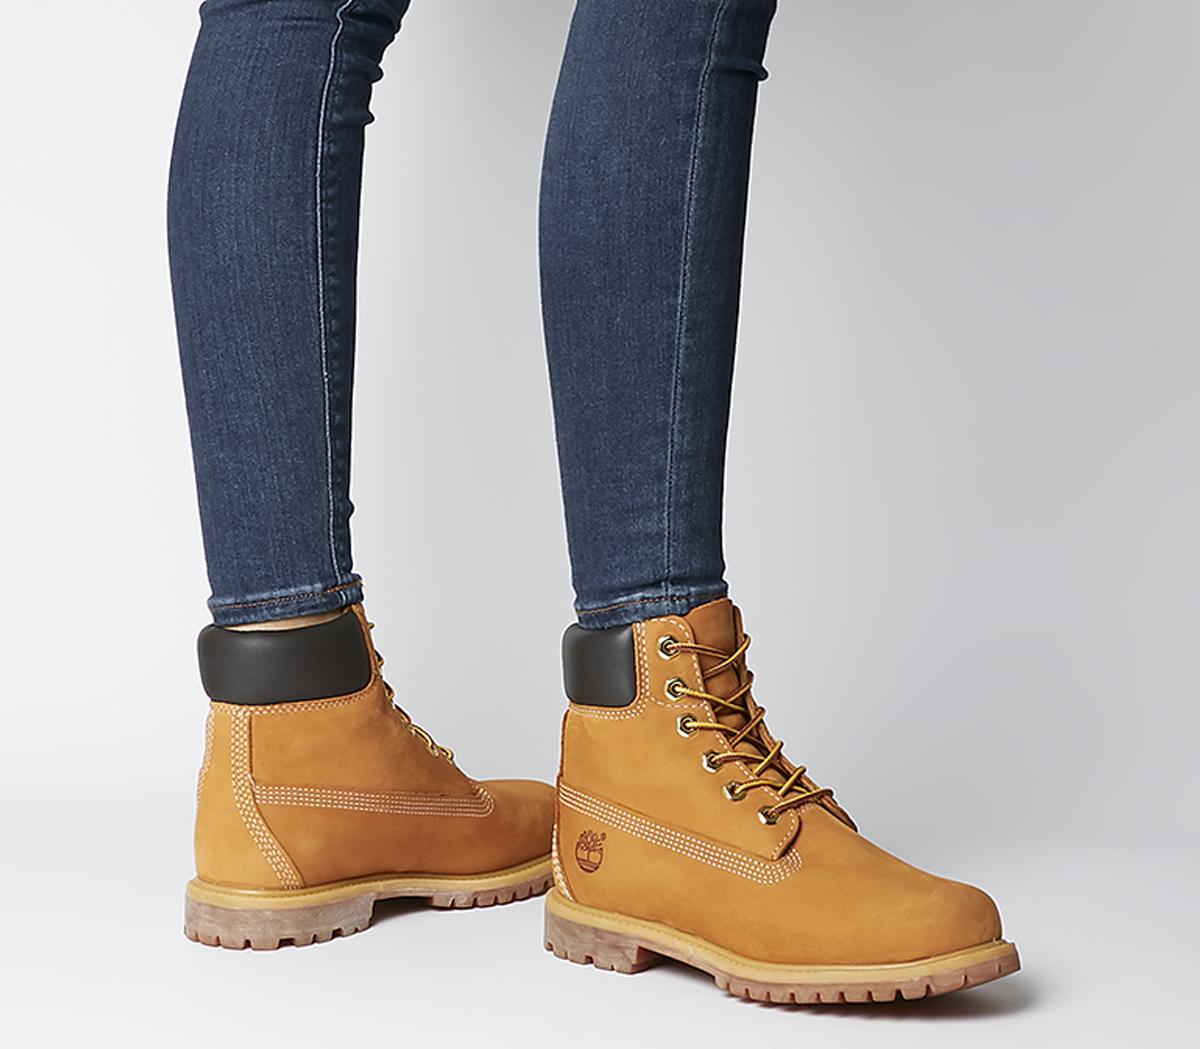 timberland uk womens boots